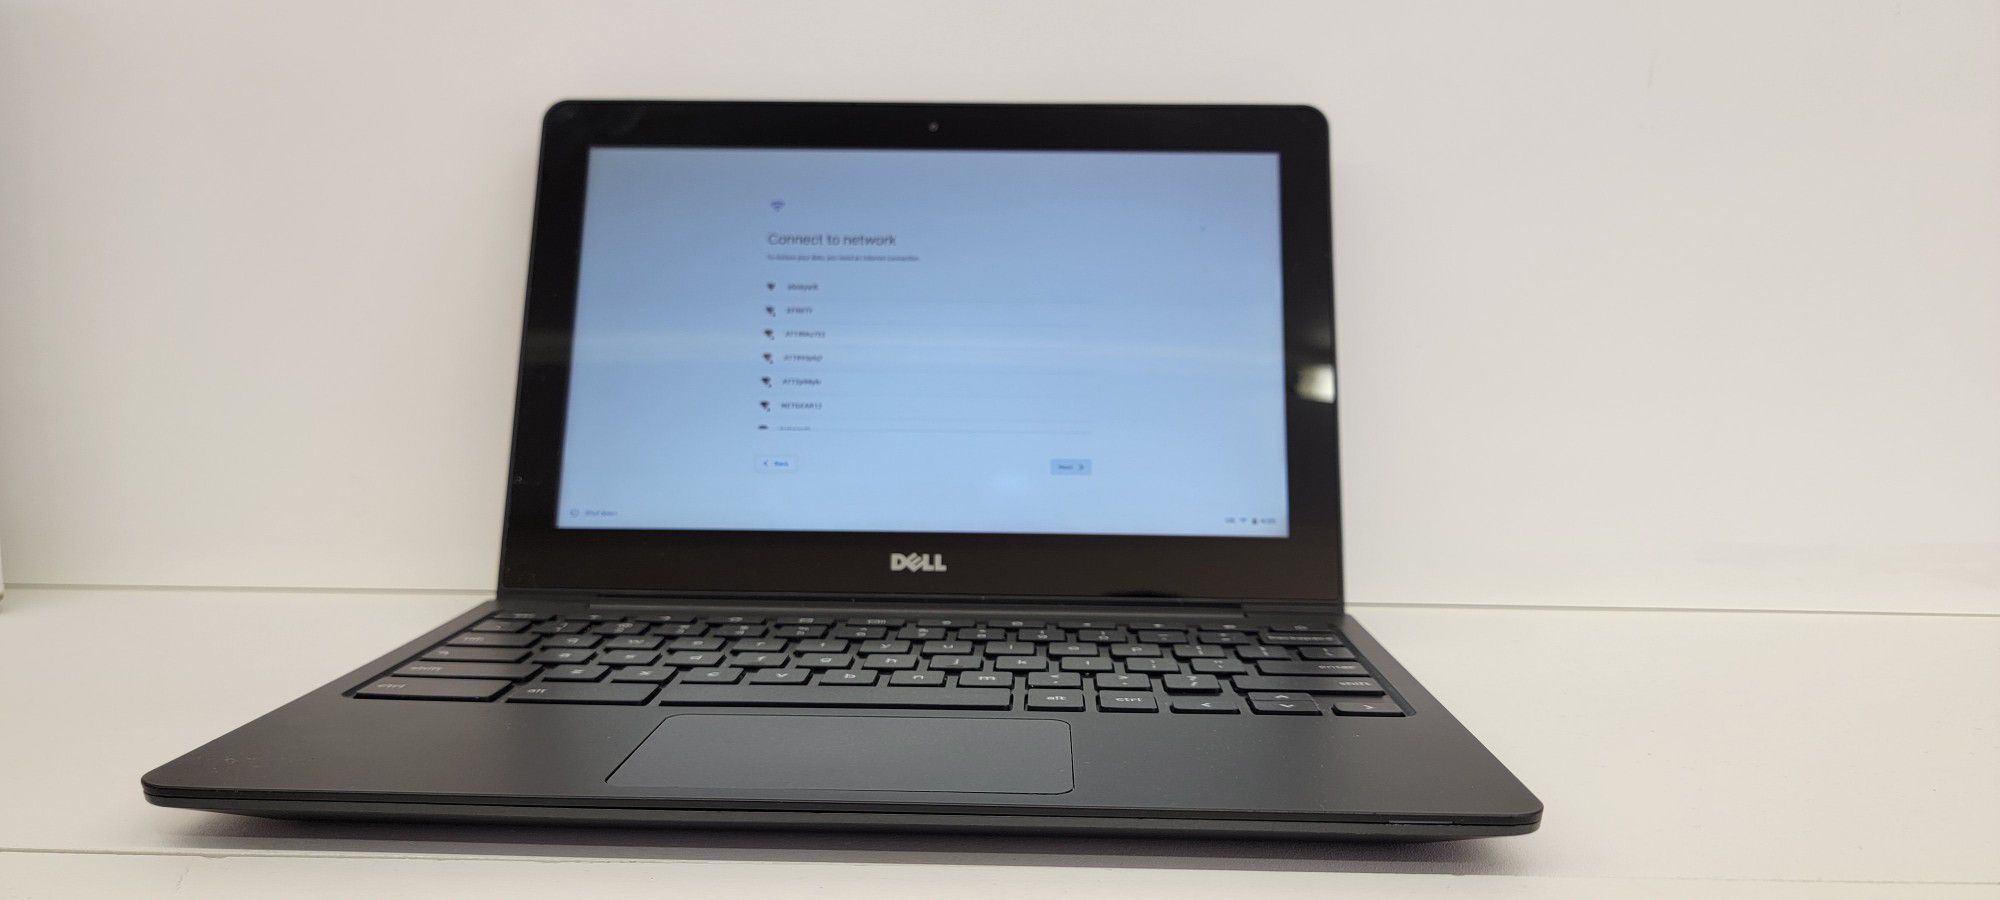 Dell Chromebook 11 CB1C13 for sale

